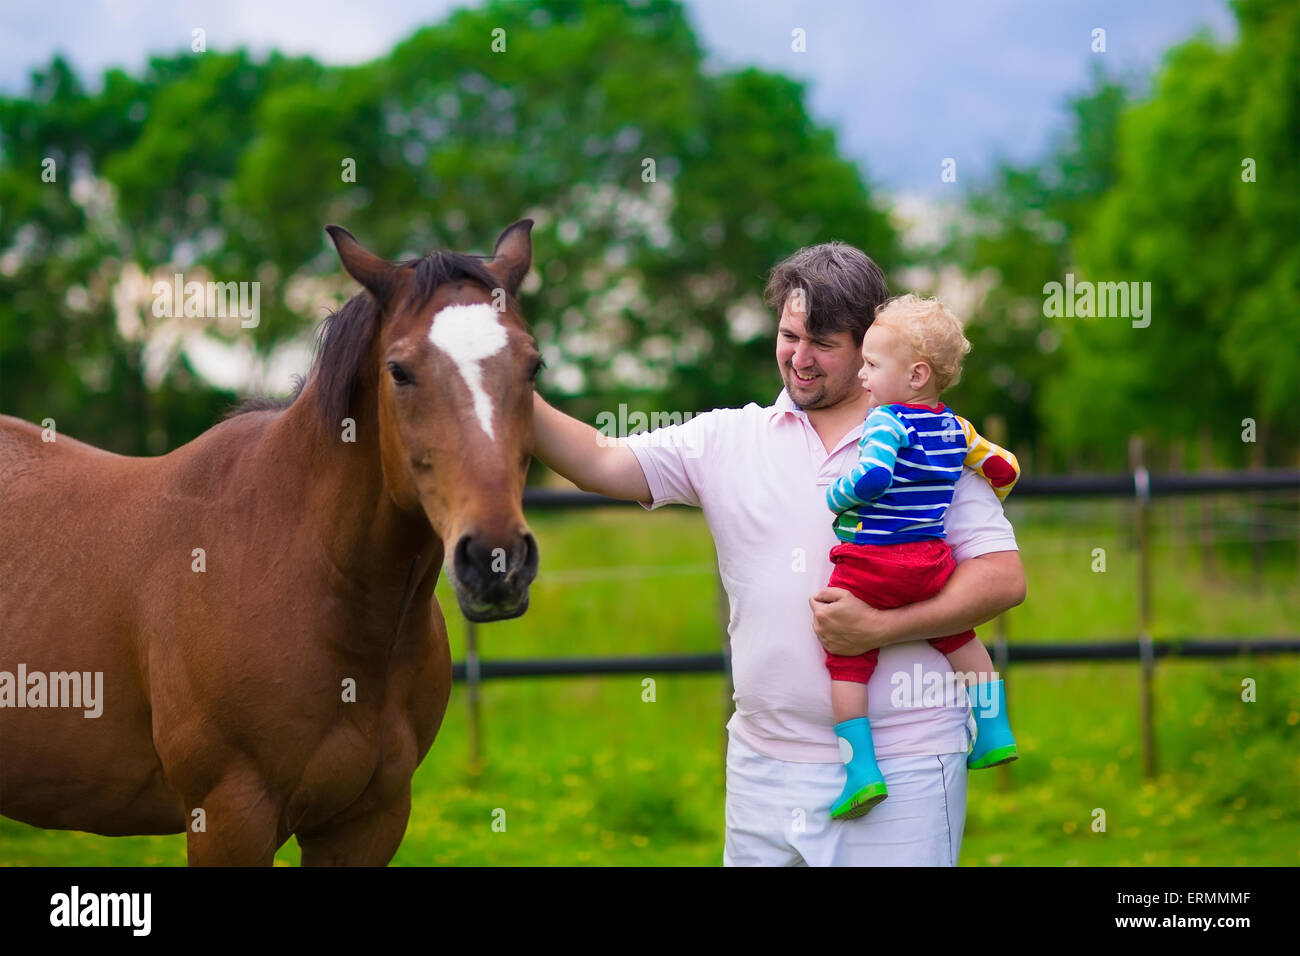 Sur une ferme familiale en été. Père et fils bébé nourrir un cheval. Plein air pour les parents et les enfants. Les enfants jouant avec des animaux. Banque D'Images